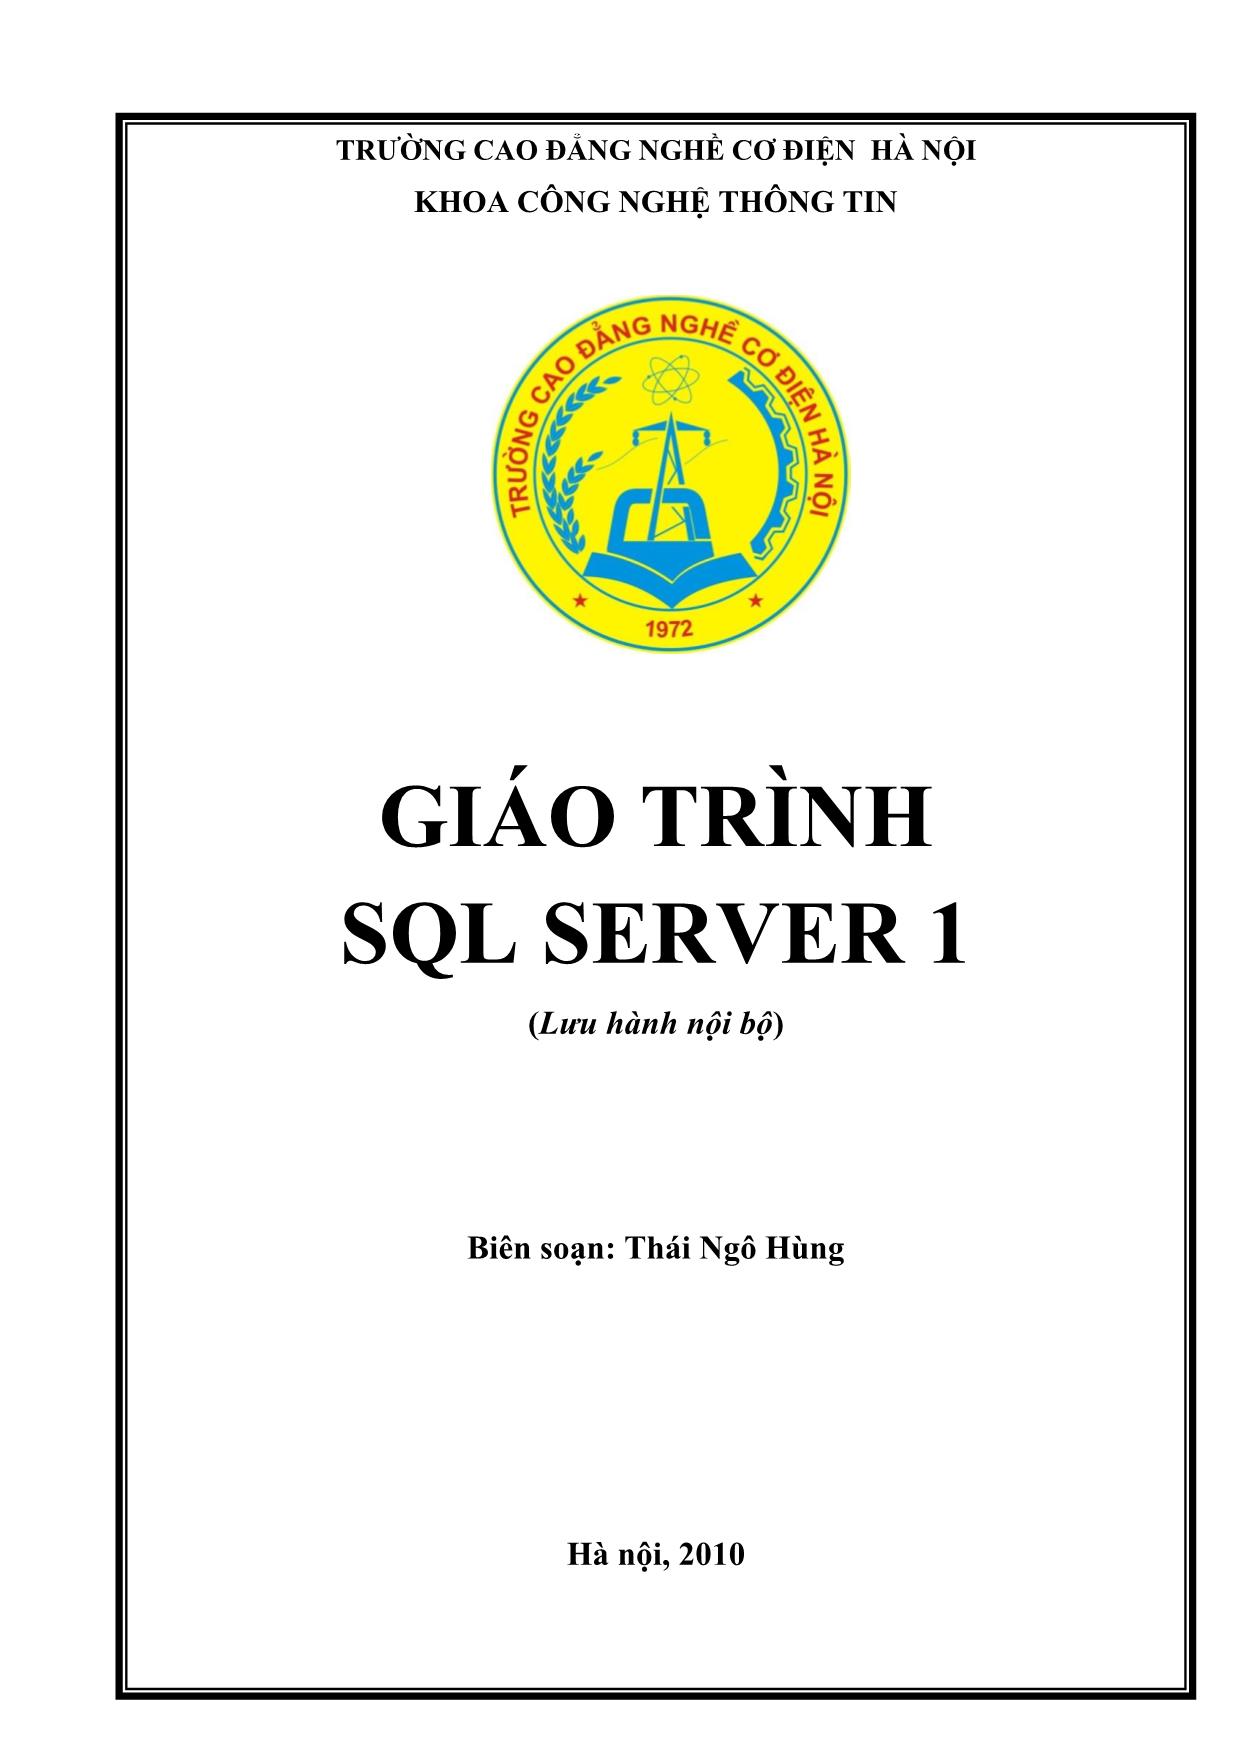 Giáo trình SQL Server 1 trang 1